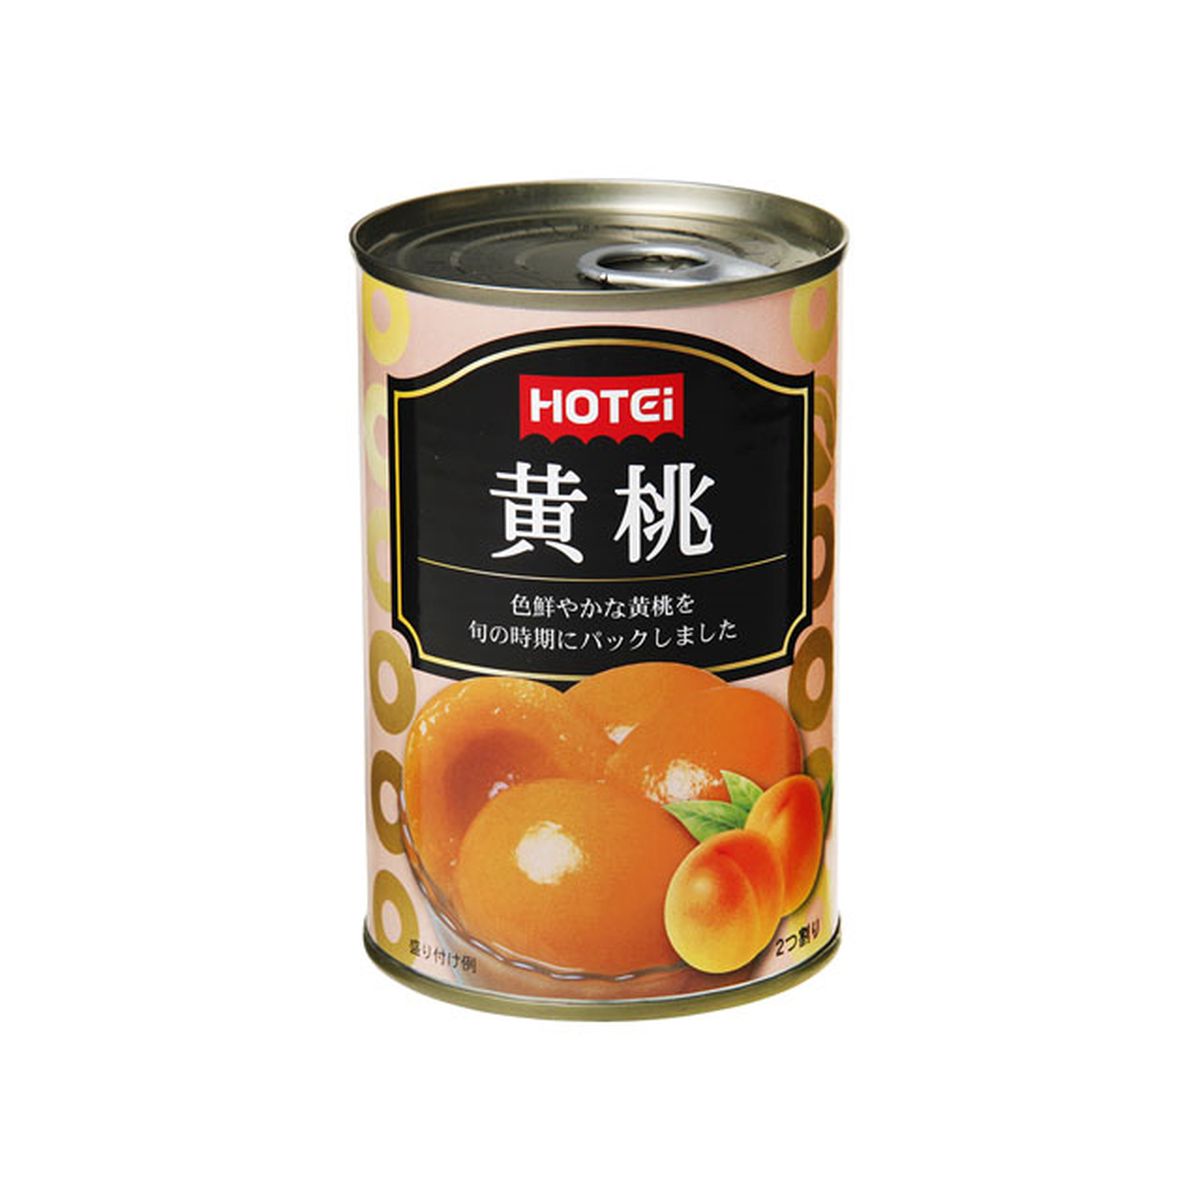 【24個入り】ホテイ 黄桃 4号缶